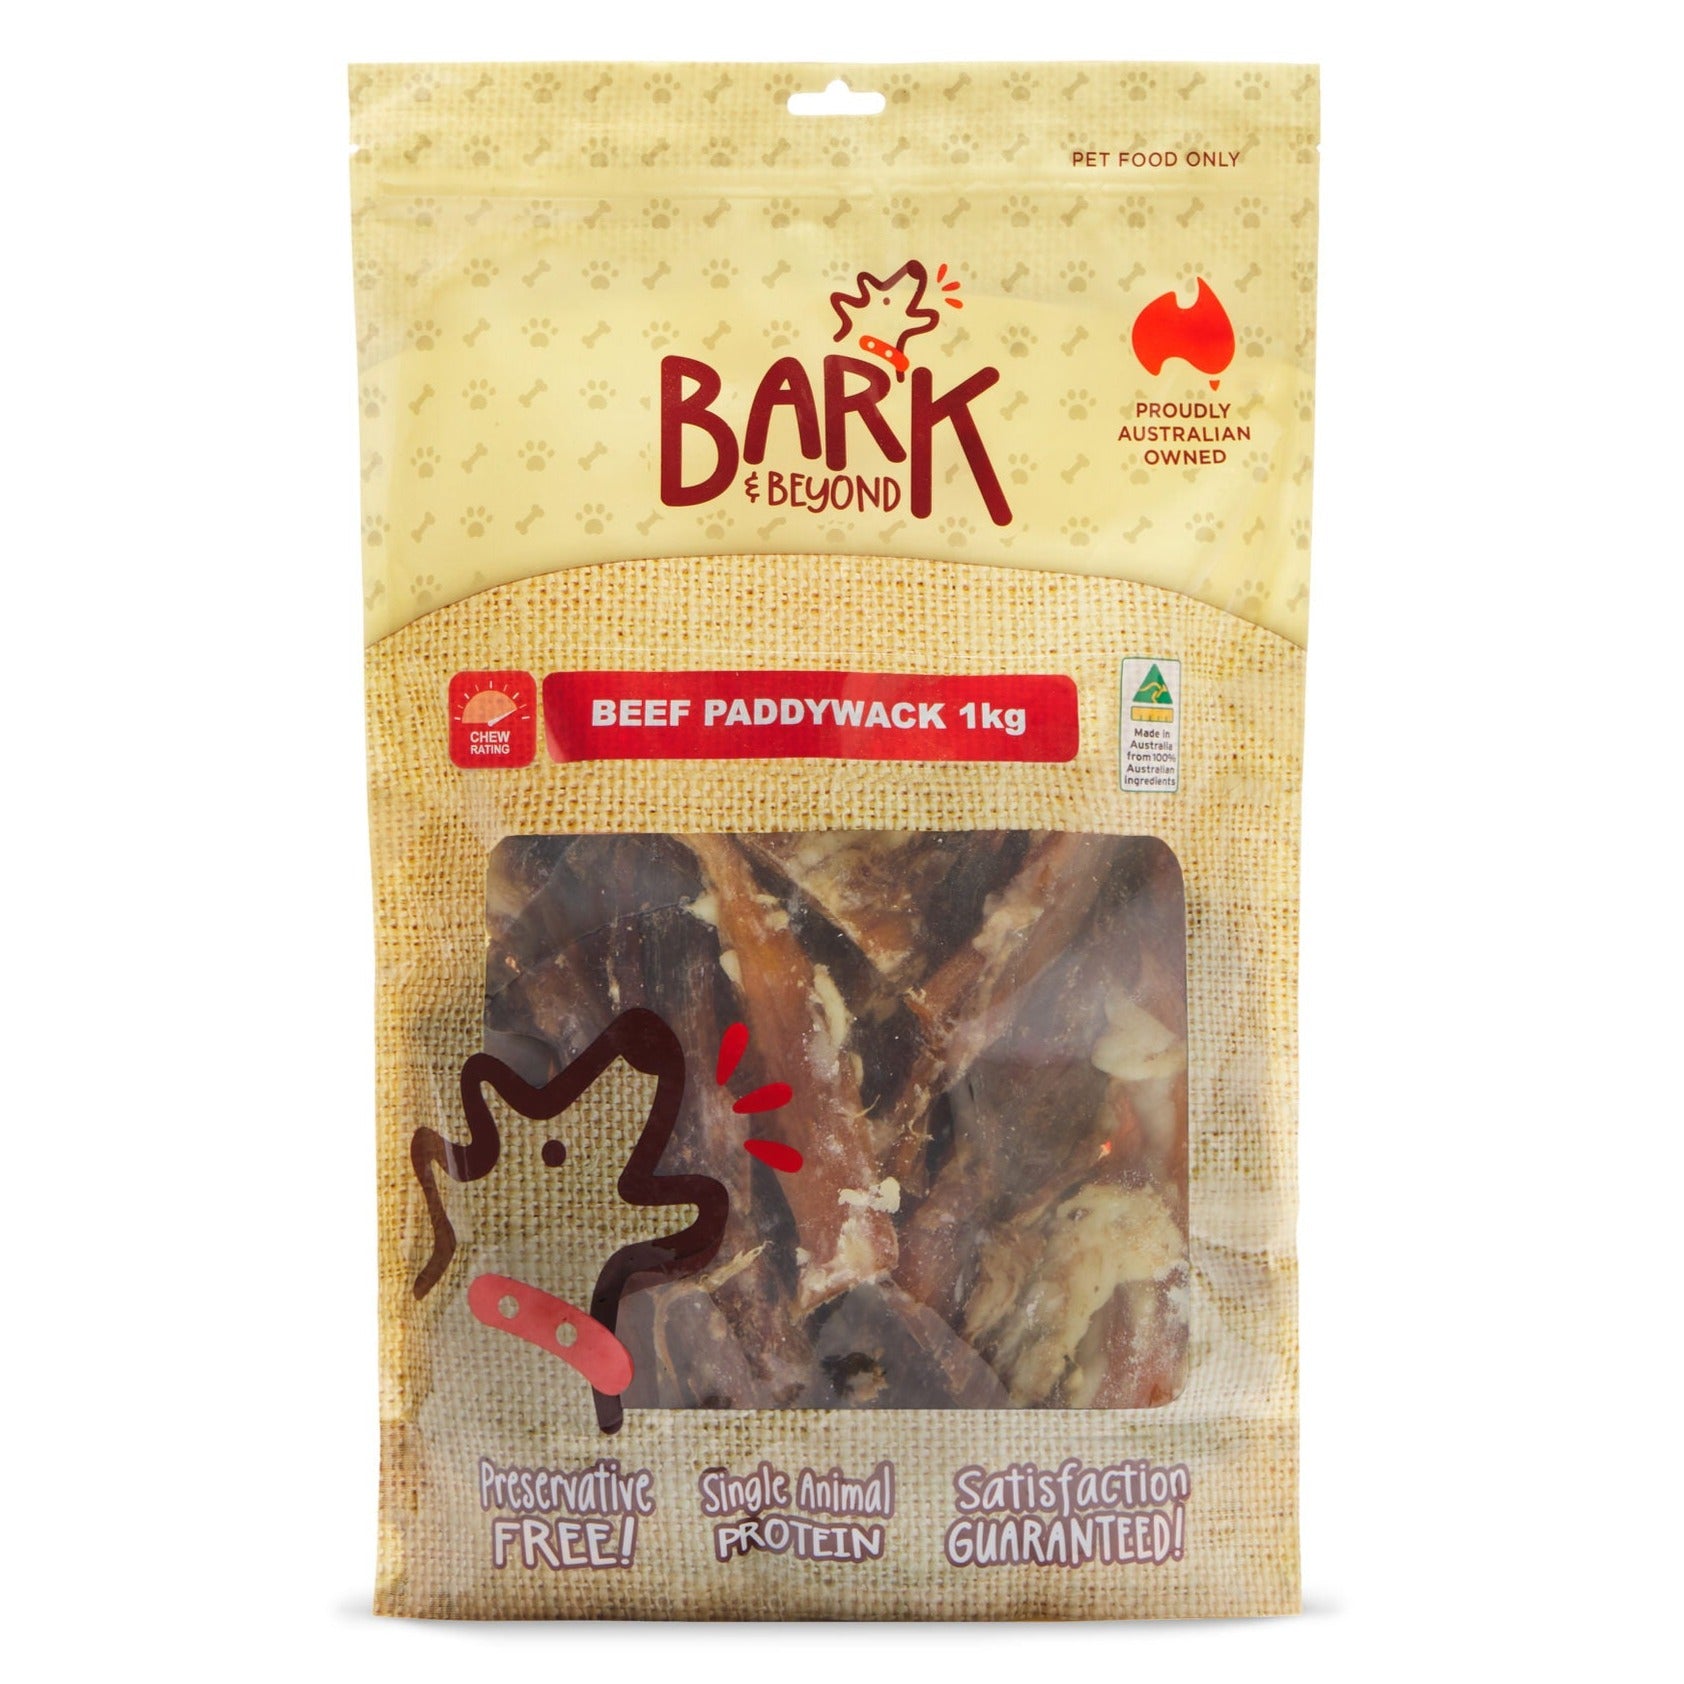 Bark & Beyond Beef Paddywack 1kg